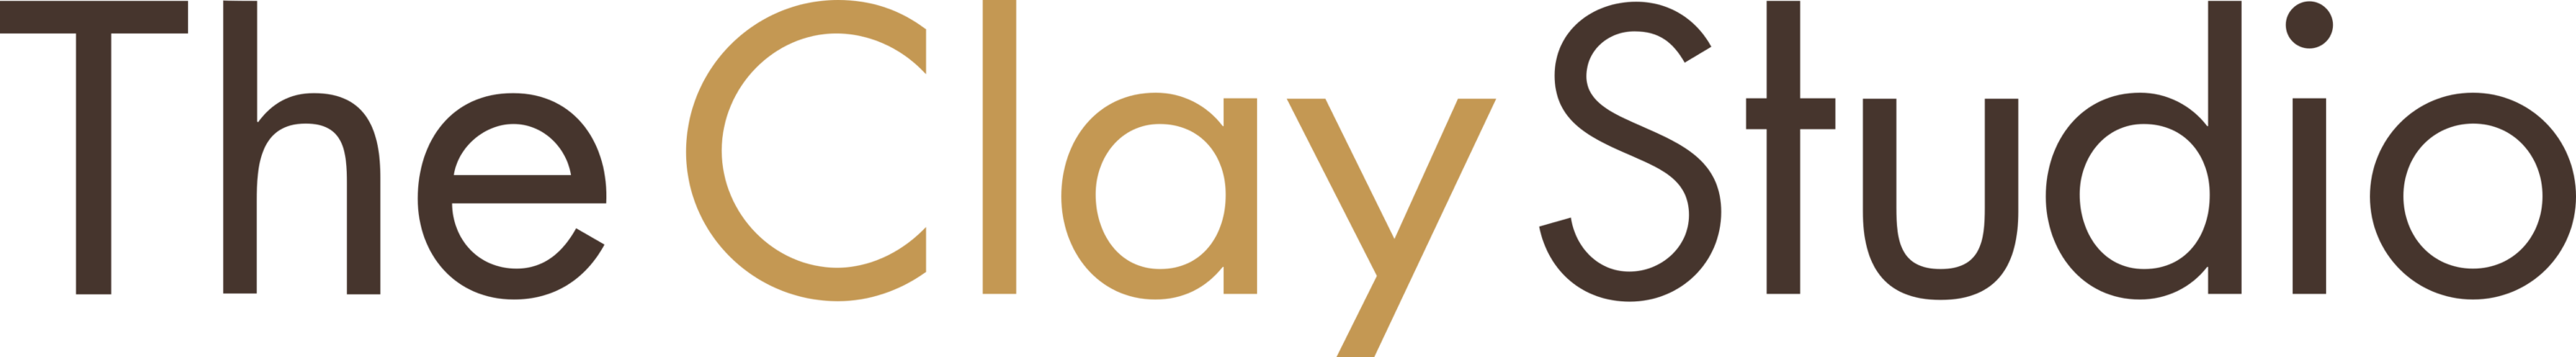 The Clay Studio Logo